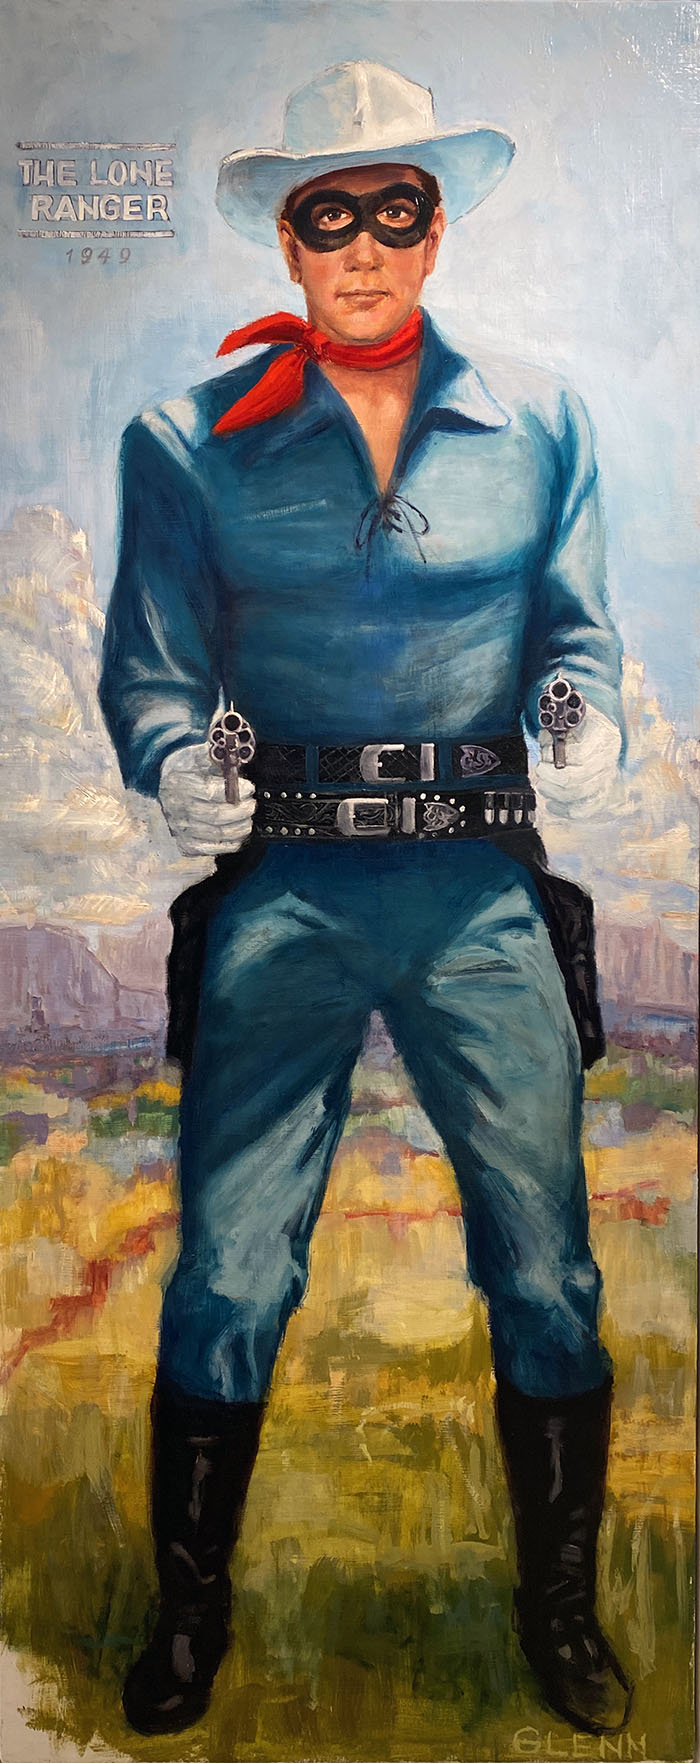 The Lone Ranger By Glenn Beck Park City Fine Art Gallery In Park City